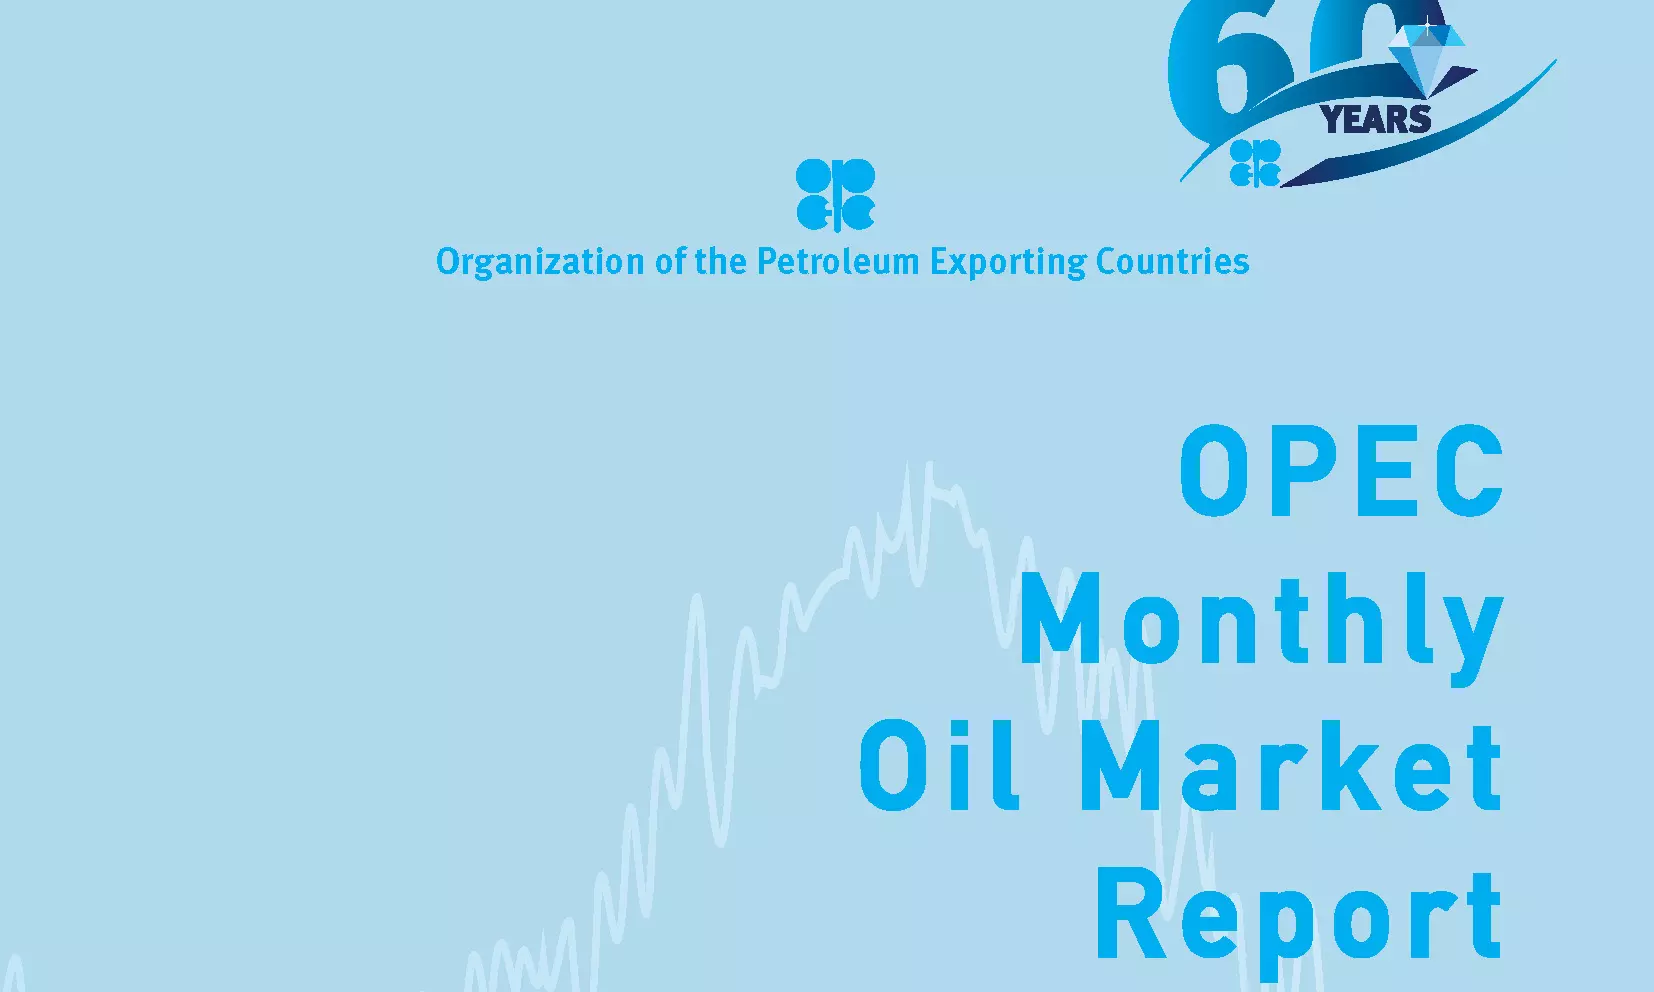 No return to pre-COVID oil demand in the near future,says OPEC report